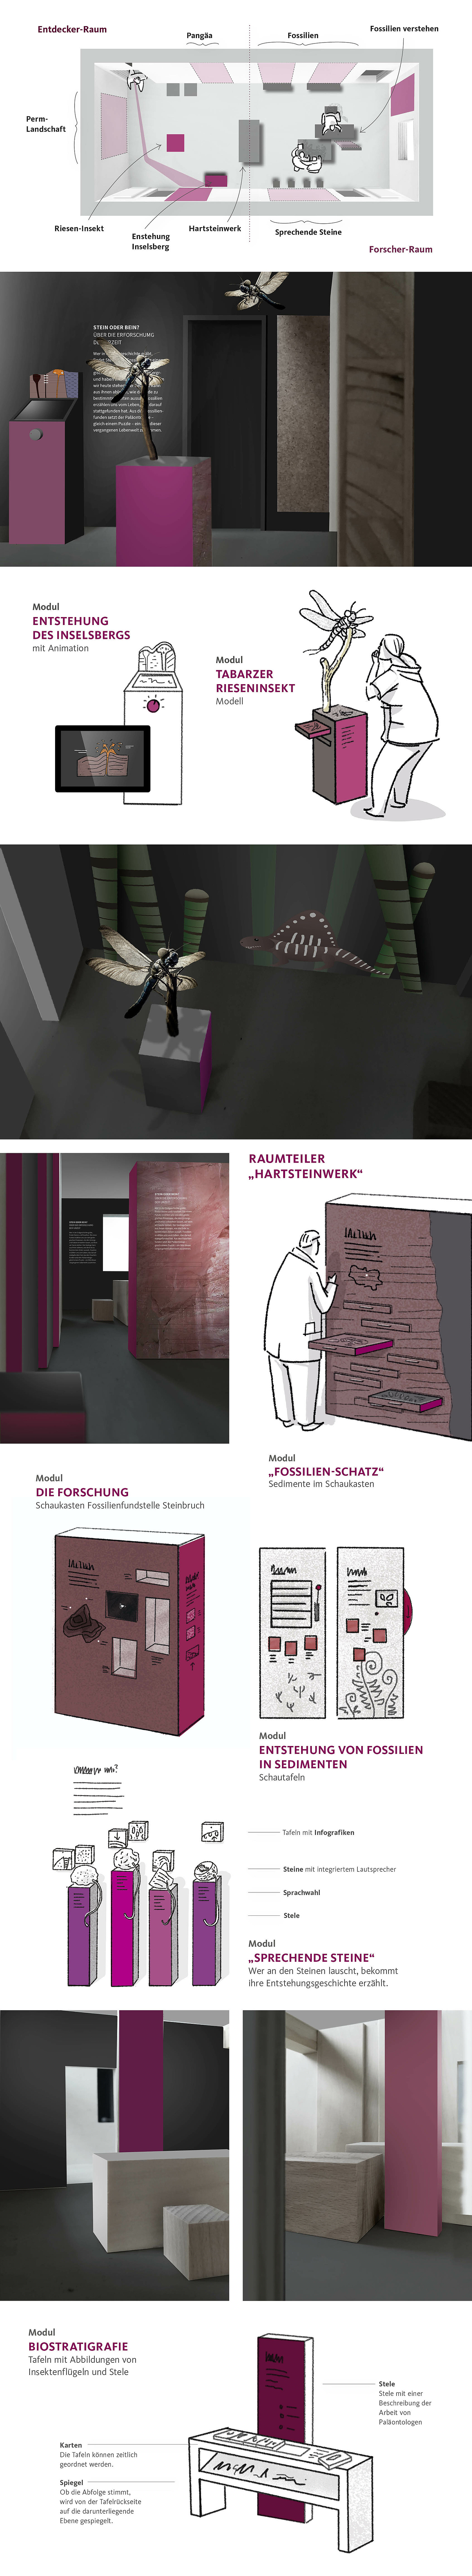 Skizzen und Darstellungen aus der Konzeptionsphase zu Planung und Entwurf der Ausstellung Geologie in der 1. Etage (© Papenfuss | Atelier)